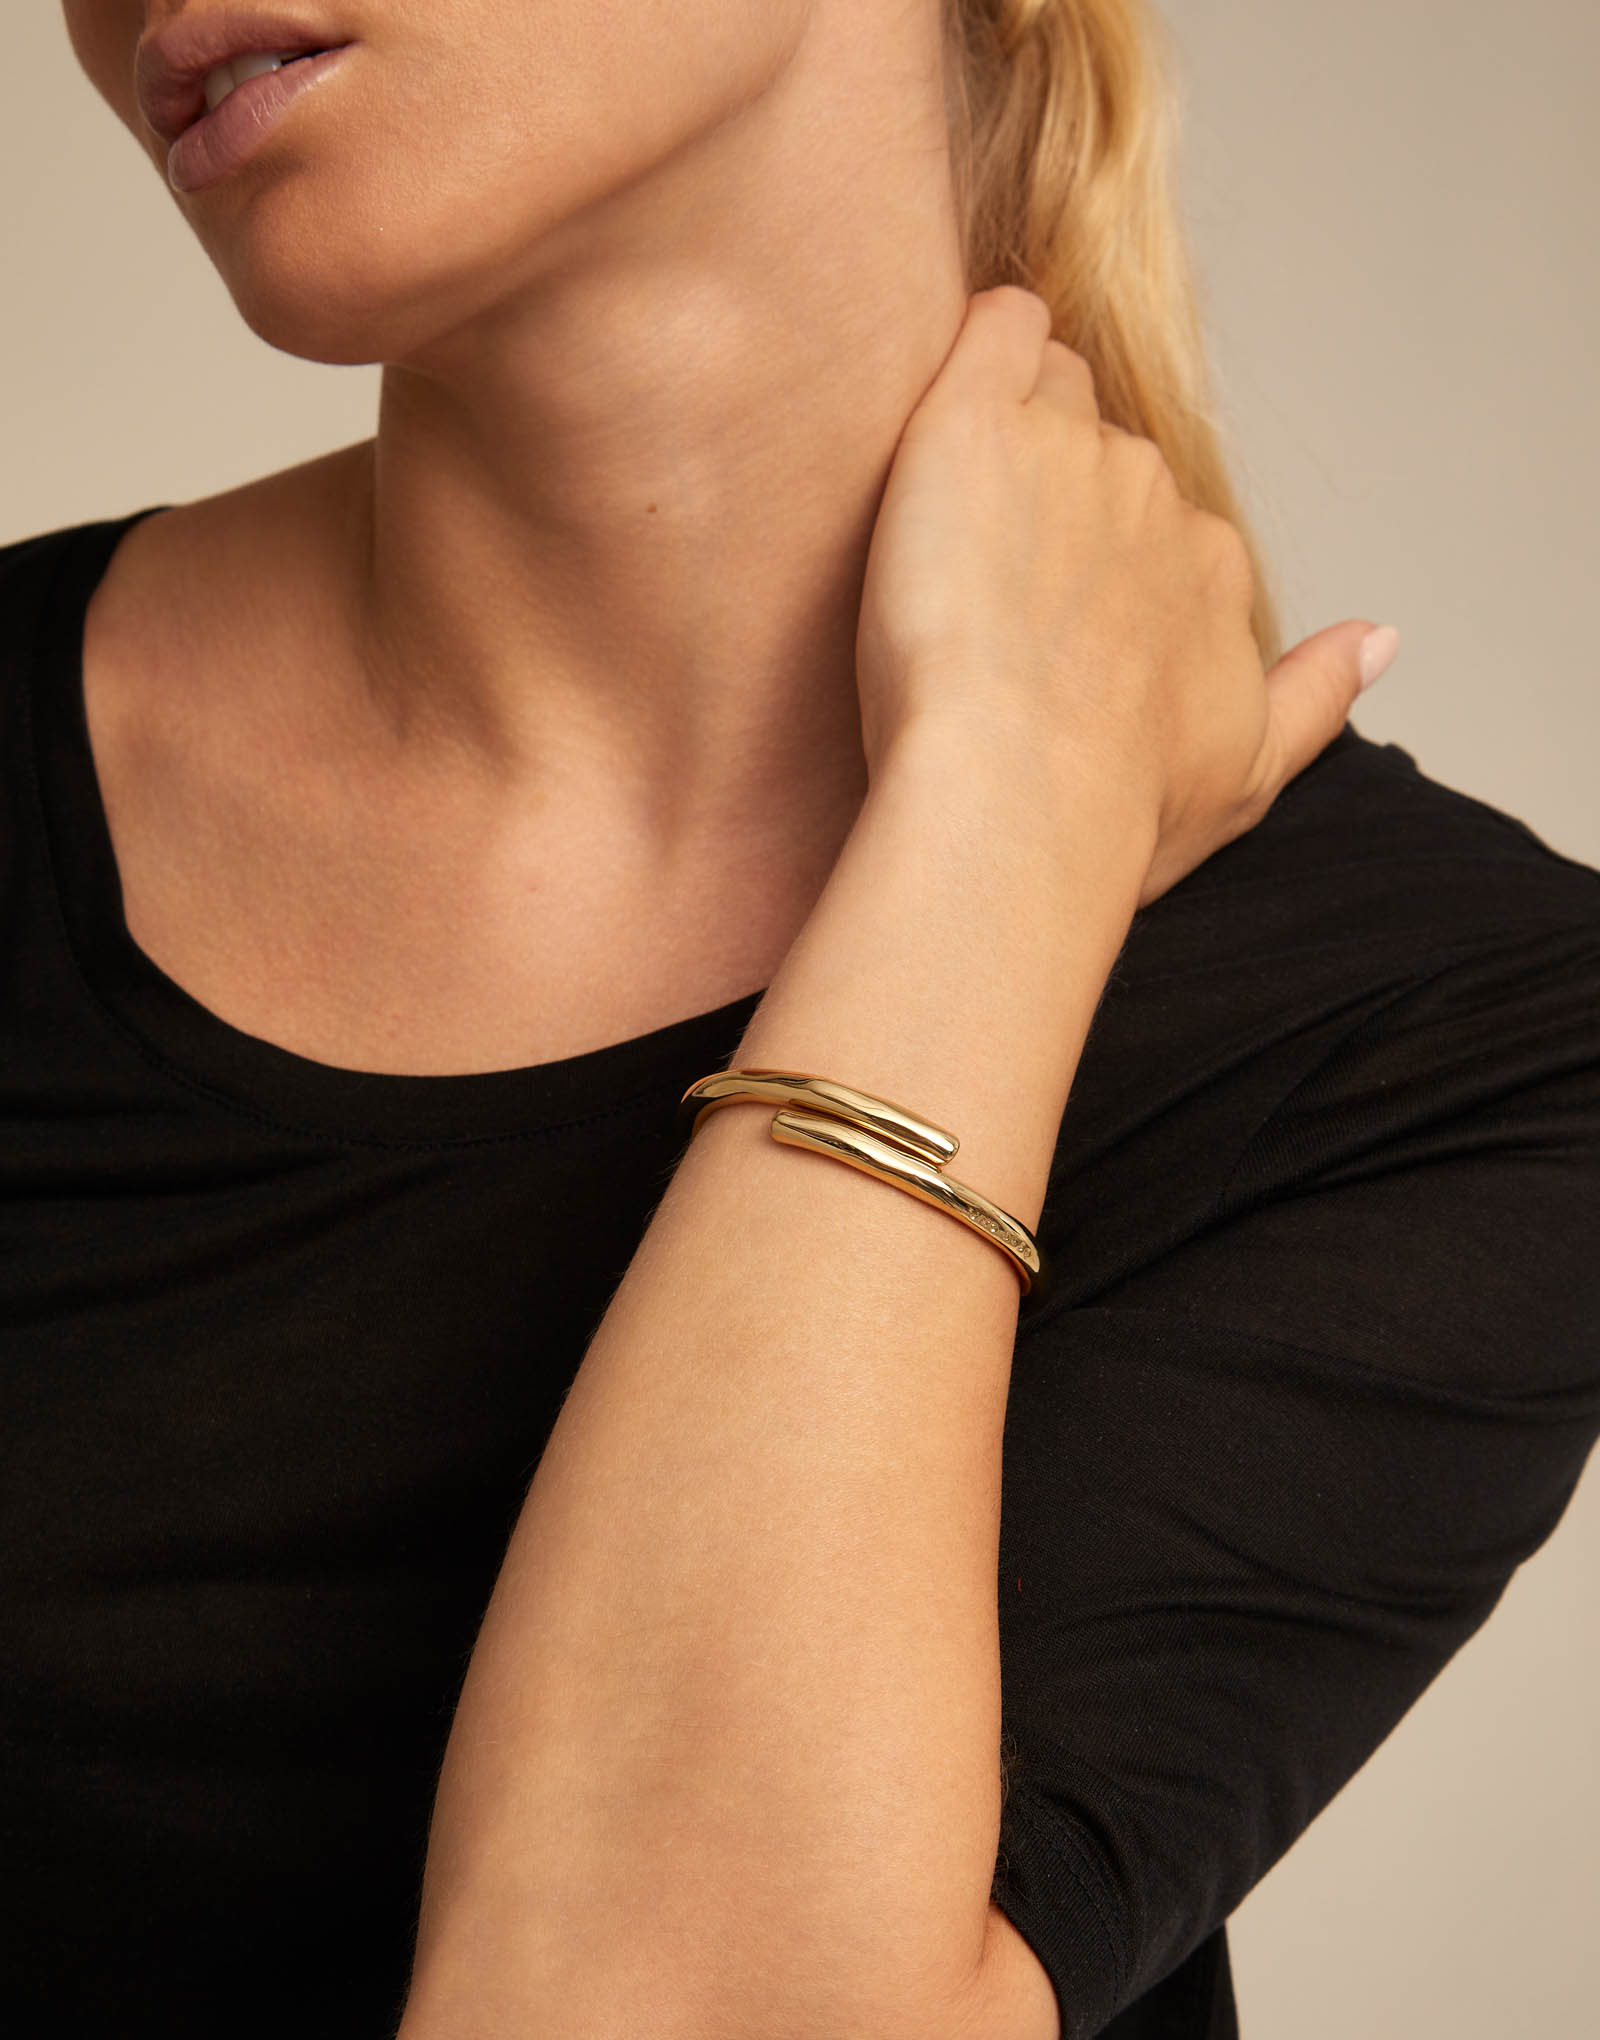 18K gold-plated tubular shaped bracelet with hidden spring, Golden, large image number null